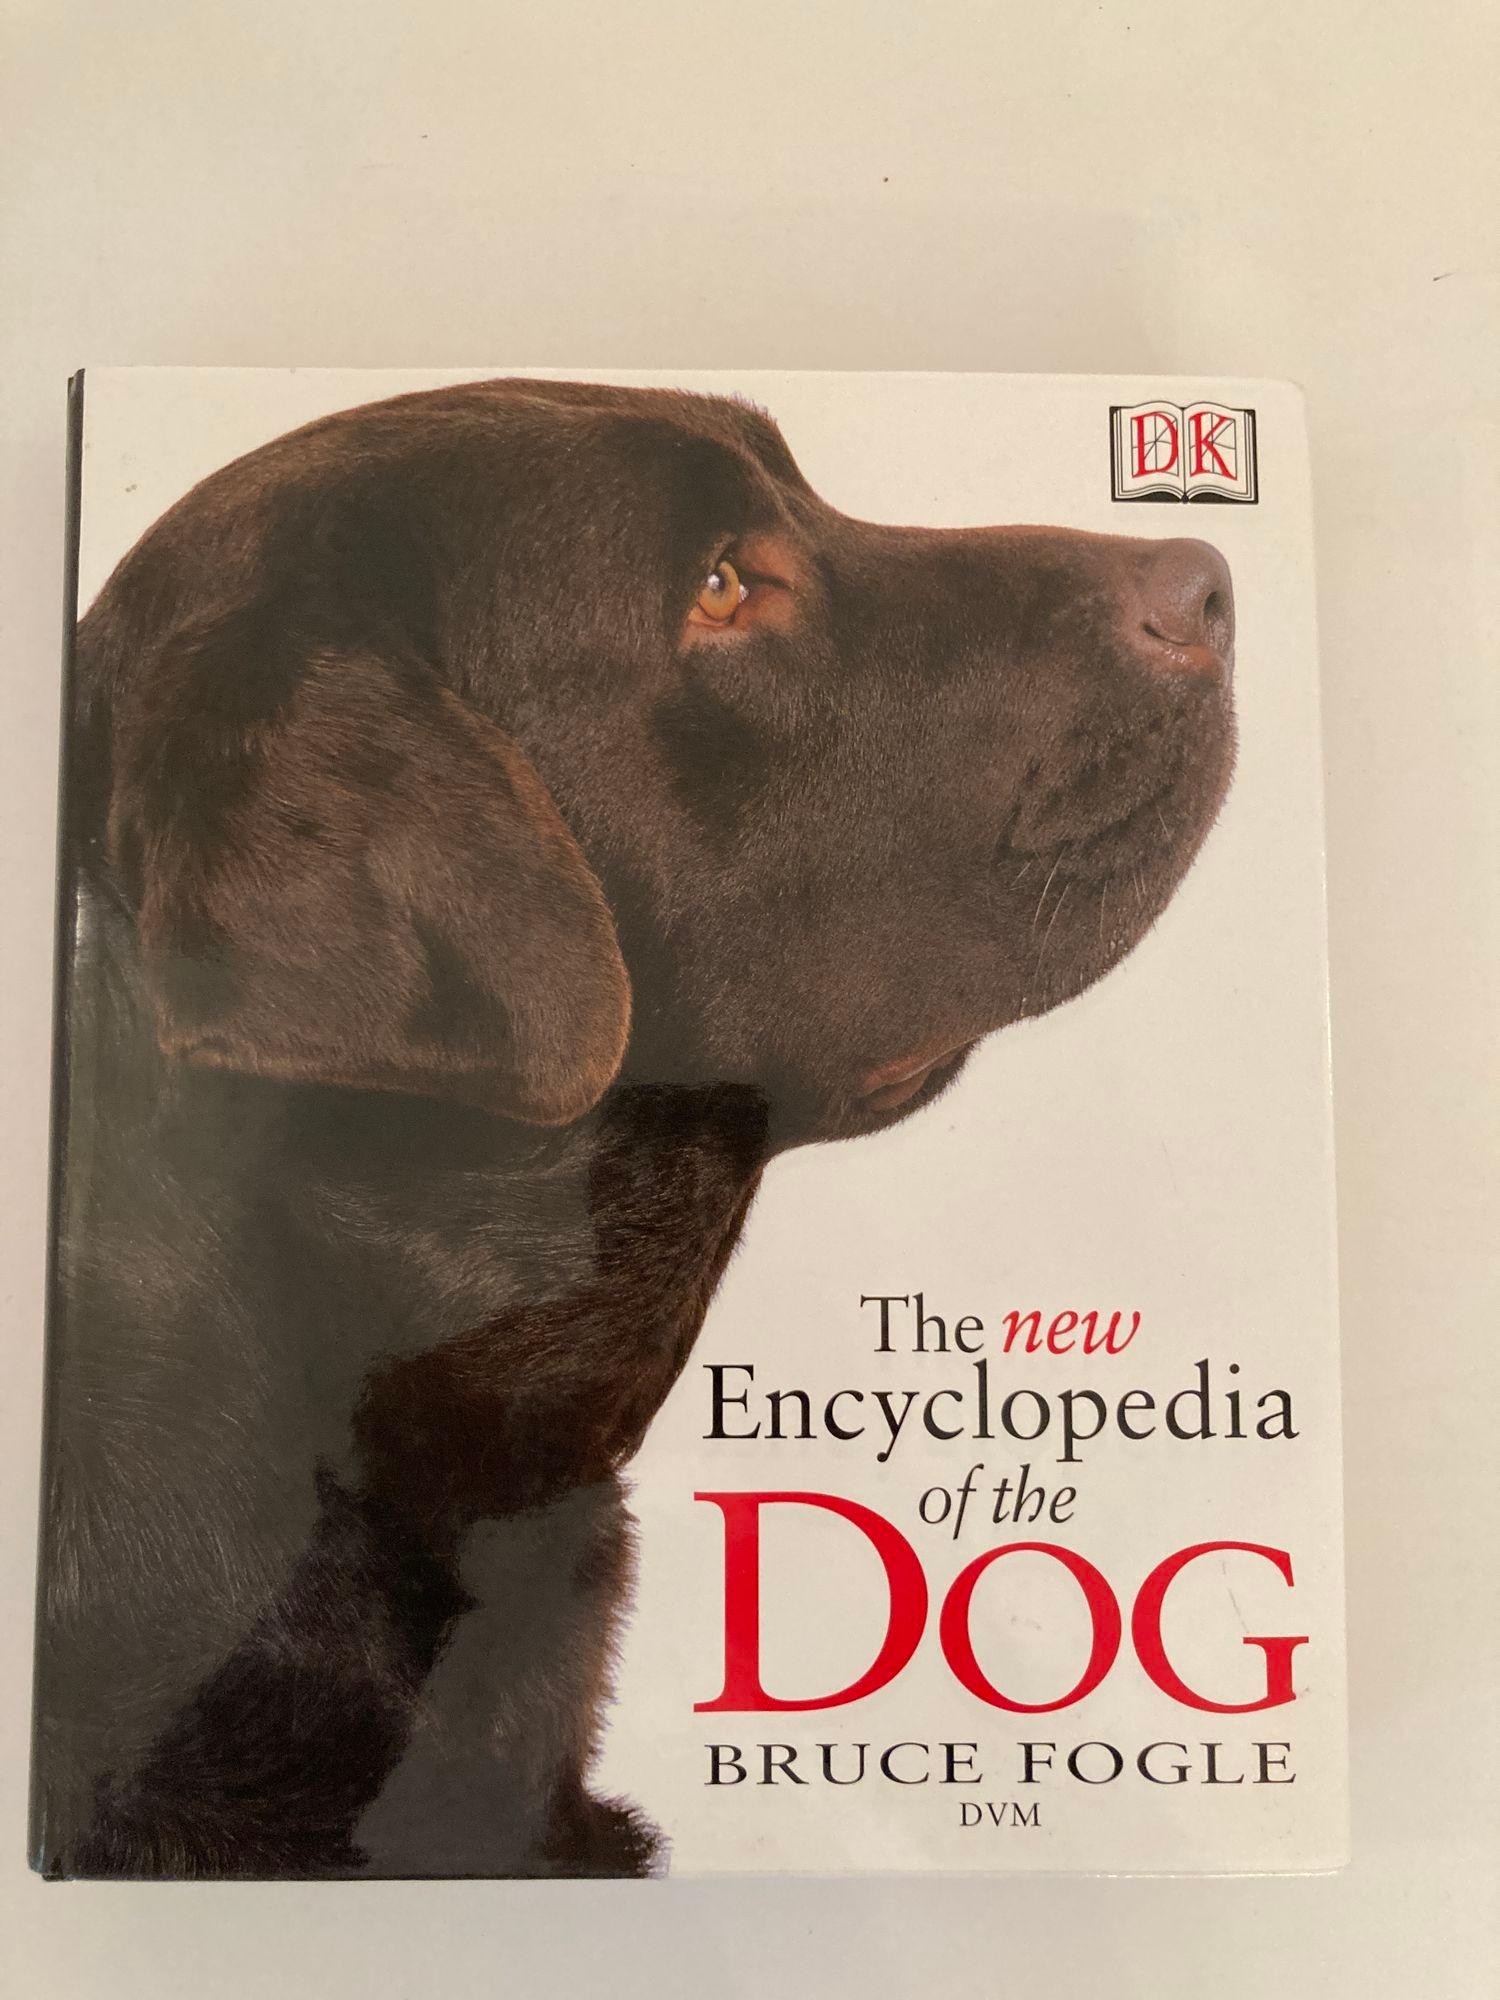 Nouvelle Encyclopédie du chien Bruce Fogle.
